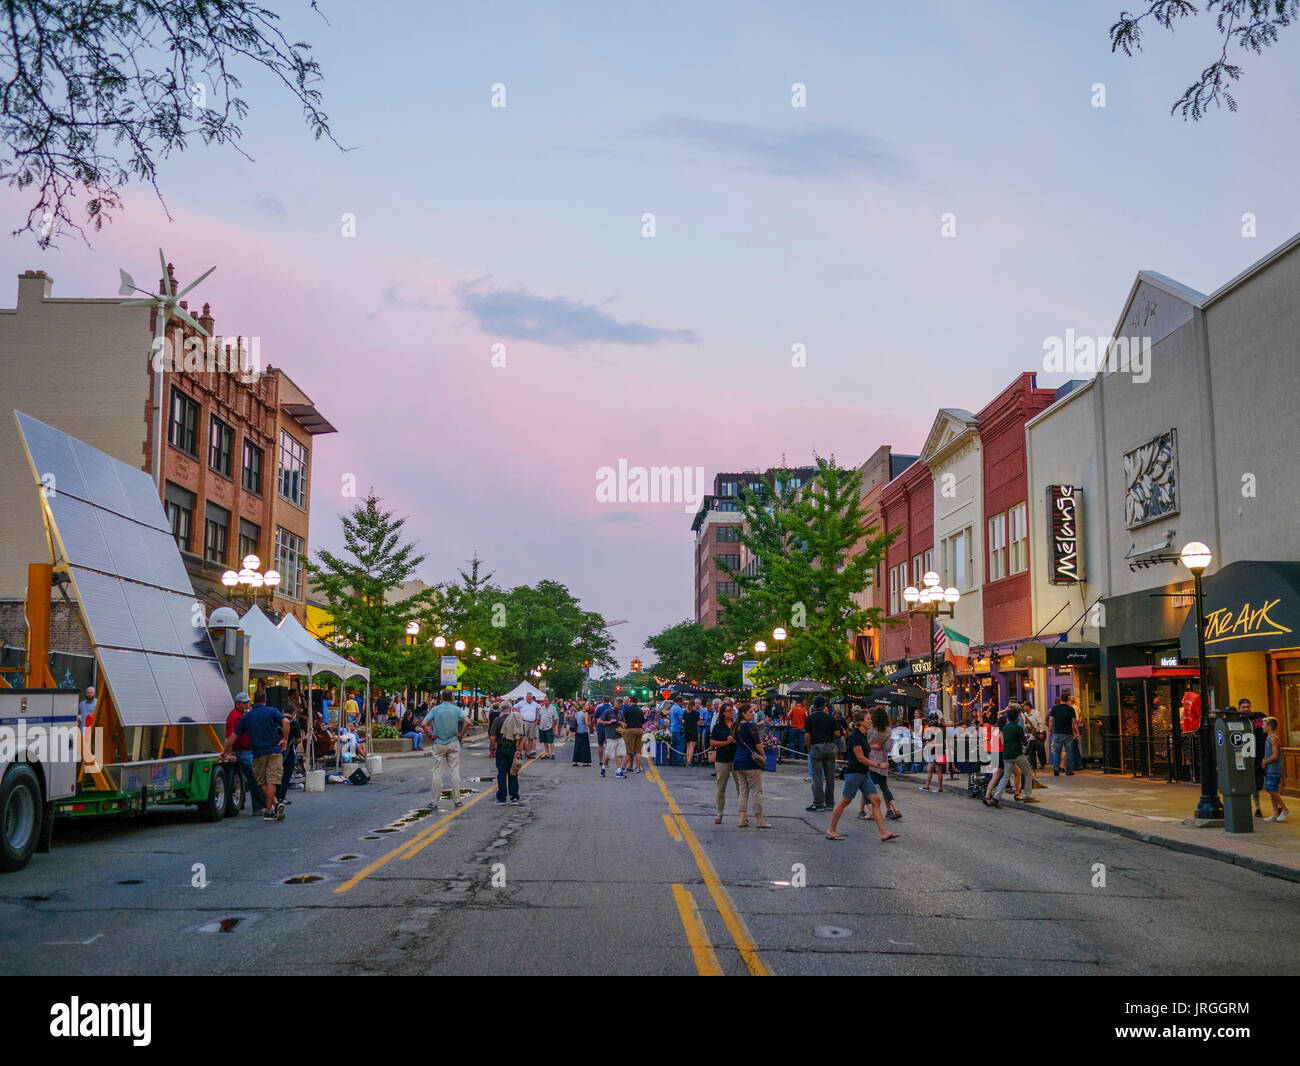 Festival de rue, rue Main, Ann Arbor, Michigan. L'énergie renouvelable l'affichage à gauche. Banque D'Images